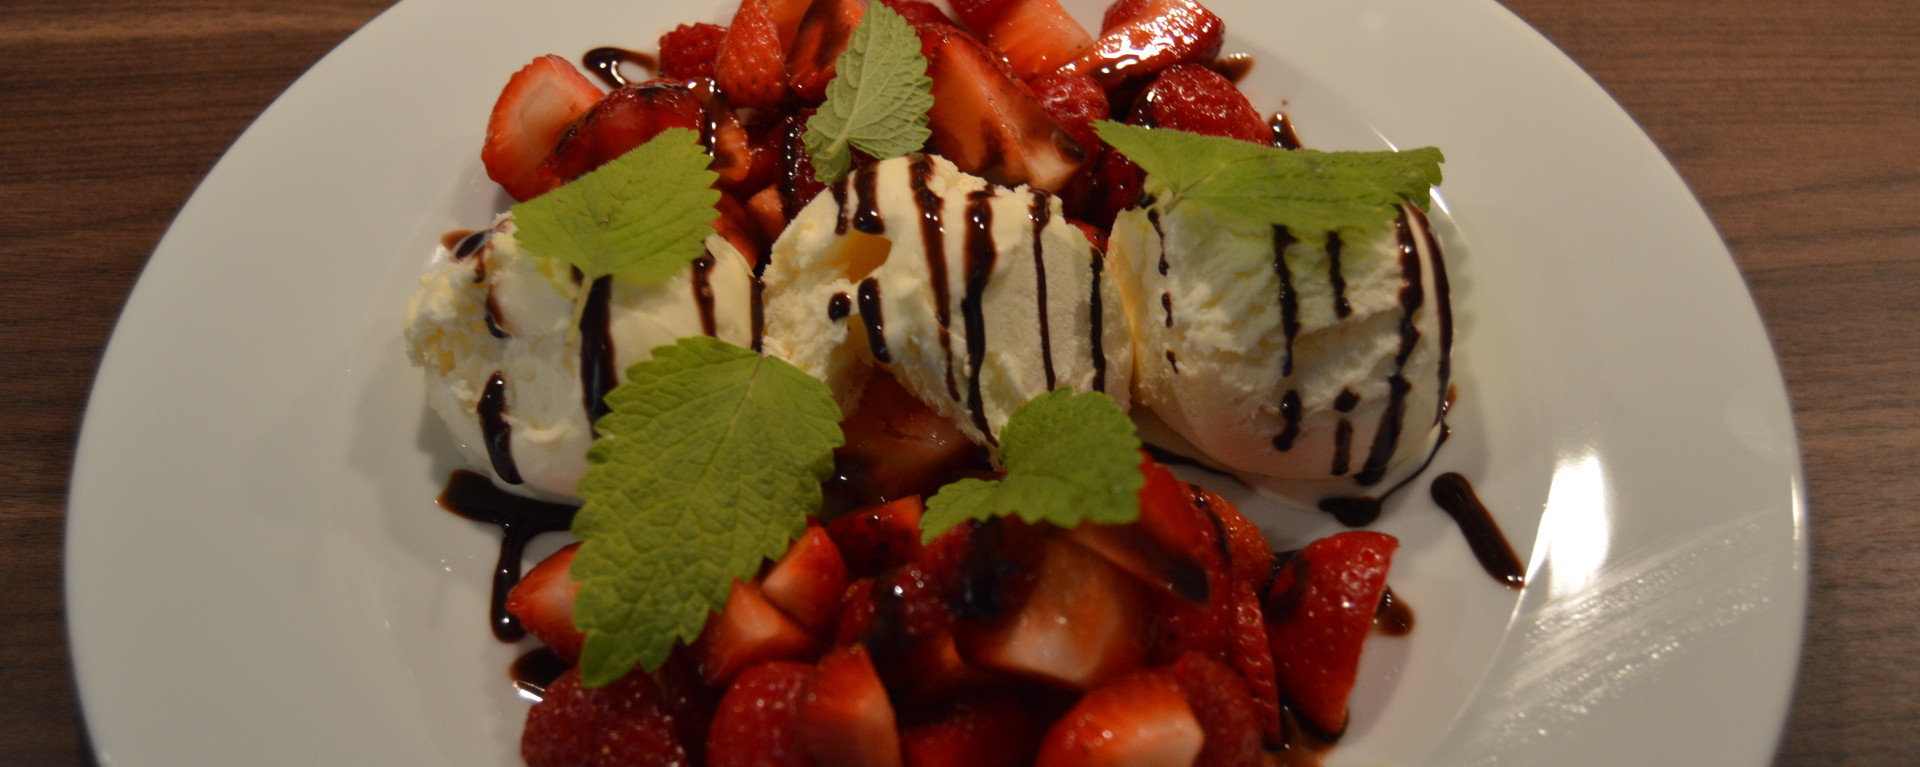 Norwegian Strawberries with ice cream